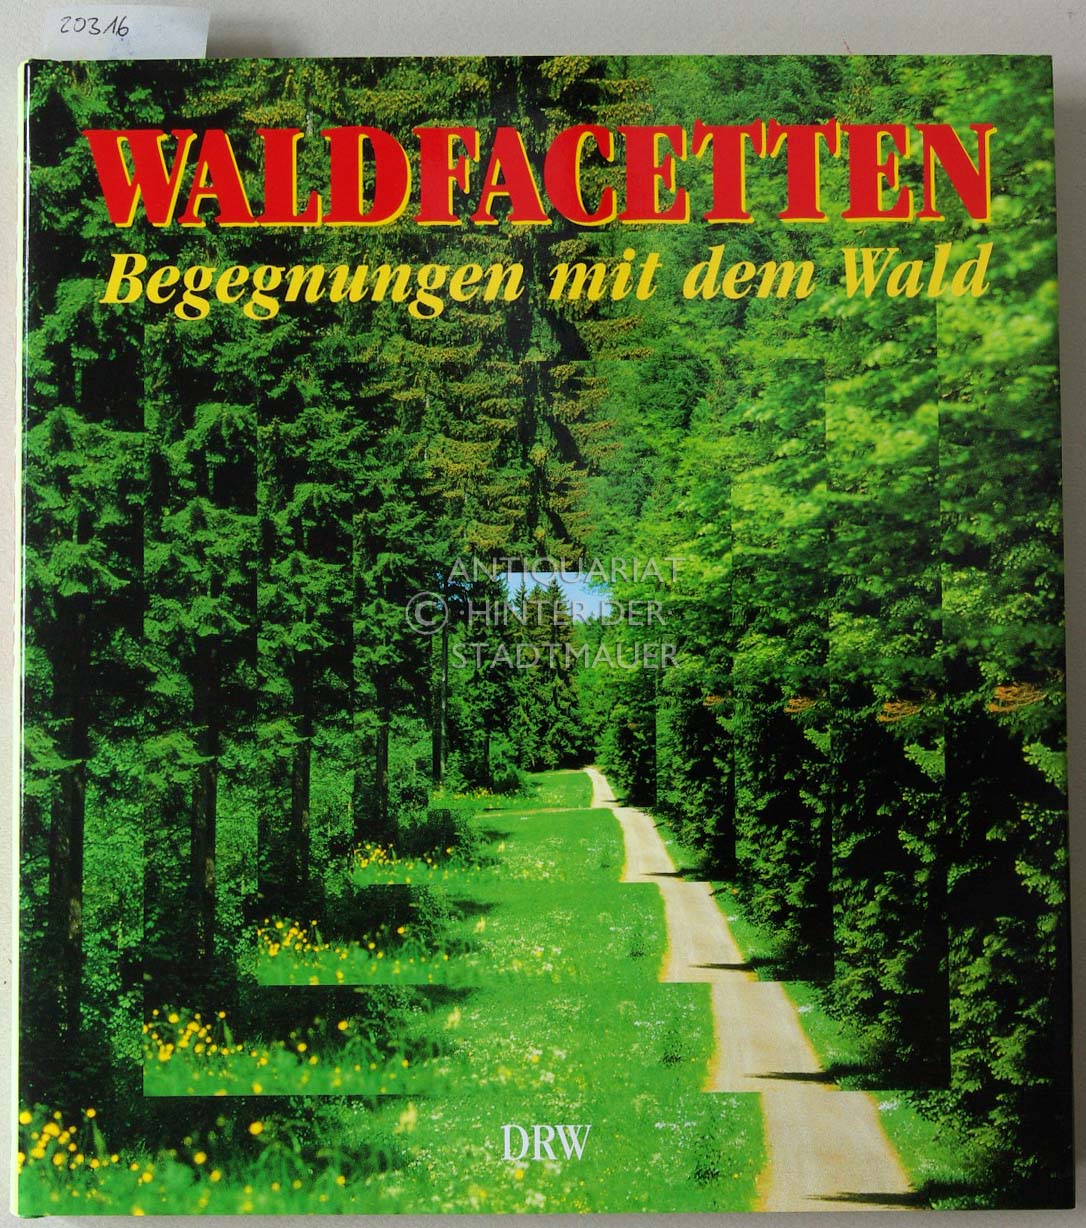 Waldfacetten: Begegnungen mit dem Wald. Hrsg. v. Deutschen Forstverein. Mit Beitr. v. Arnim Basche, .